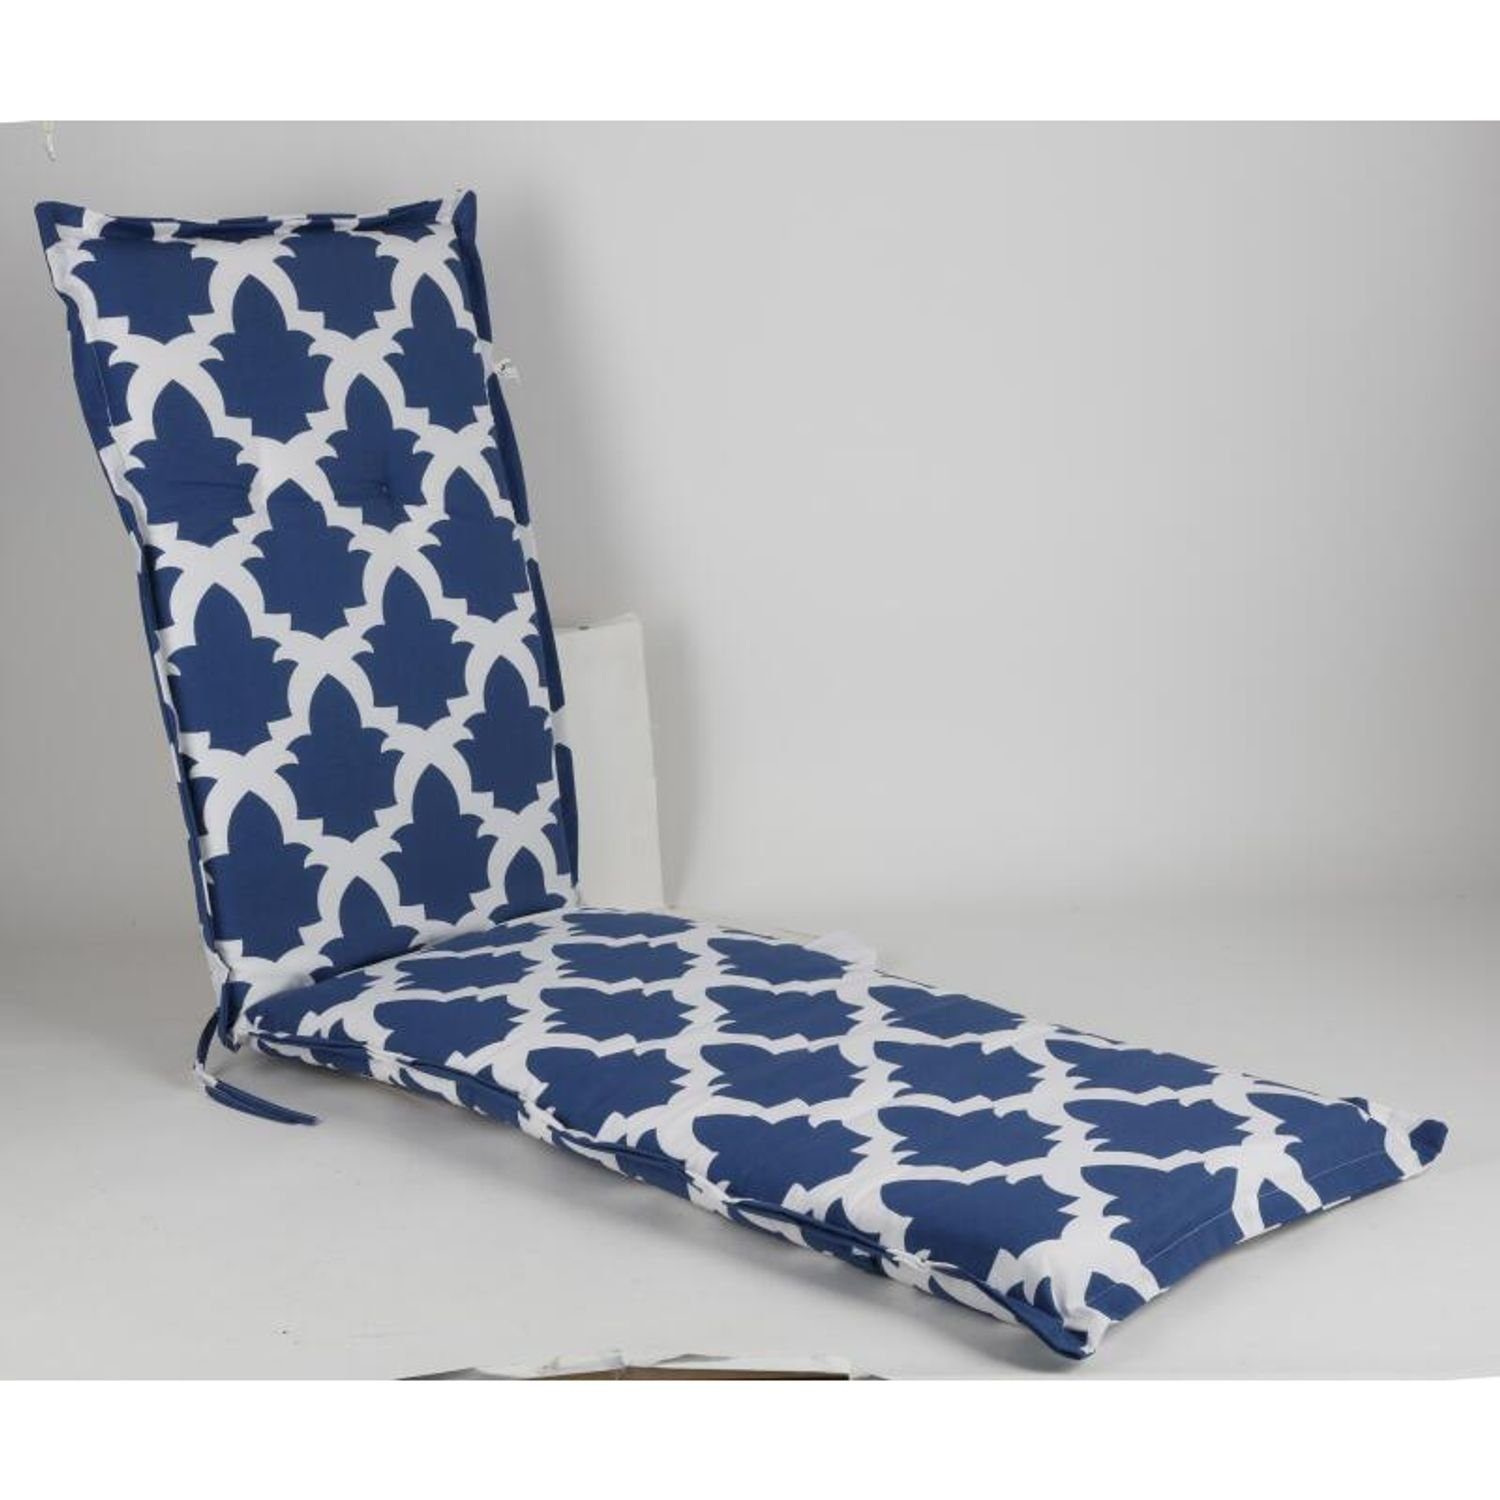 BURI Bankauflage Relax-Auflage Sylt 180x50x6cm Sitzkissen Garten Polster blau weiß